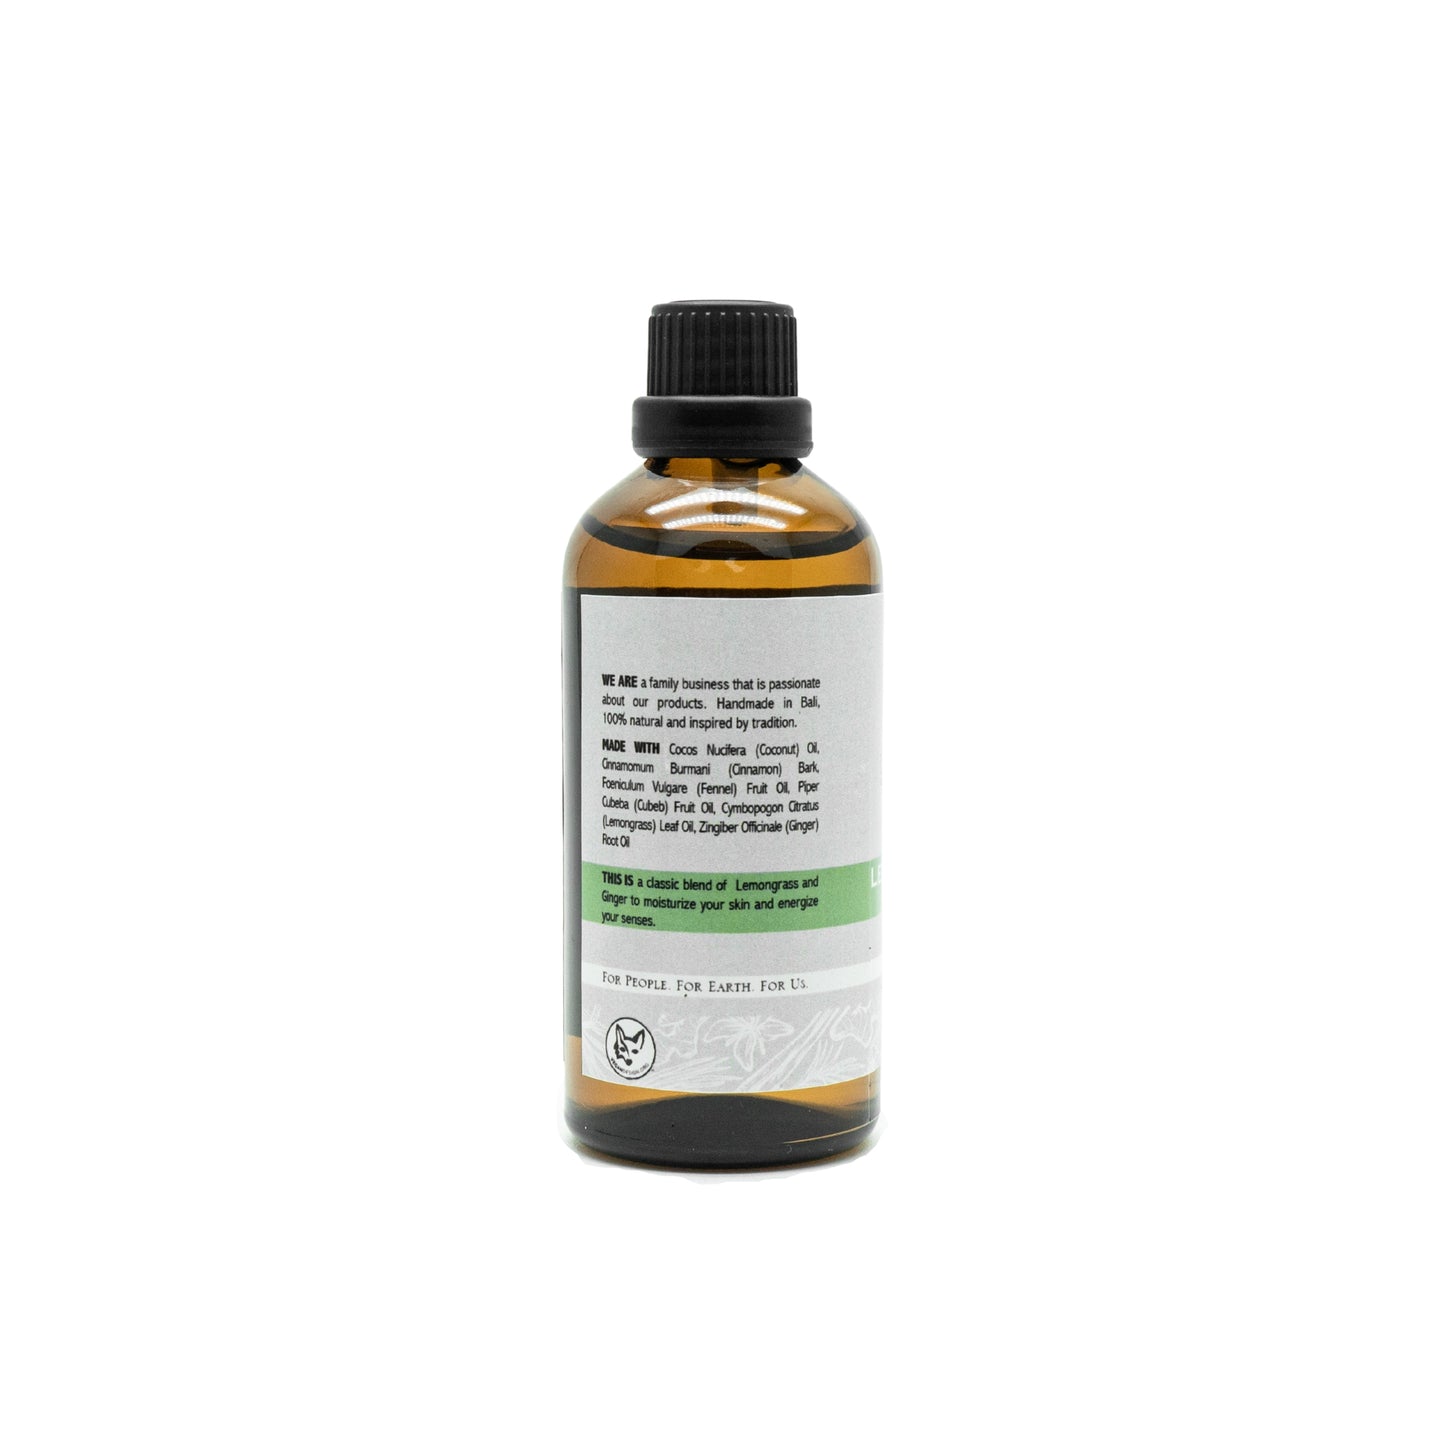 Lemongrass Ginger Body Oil 100ml